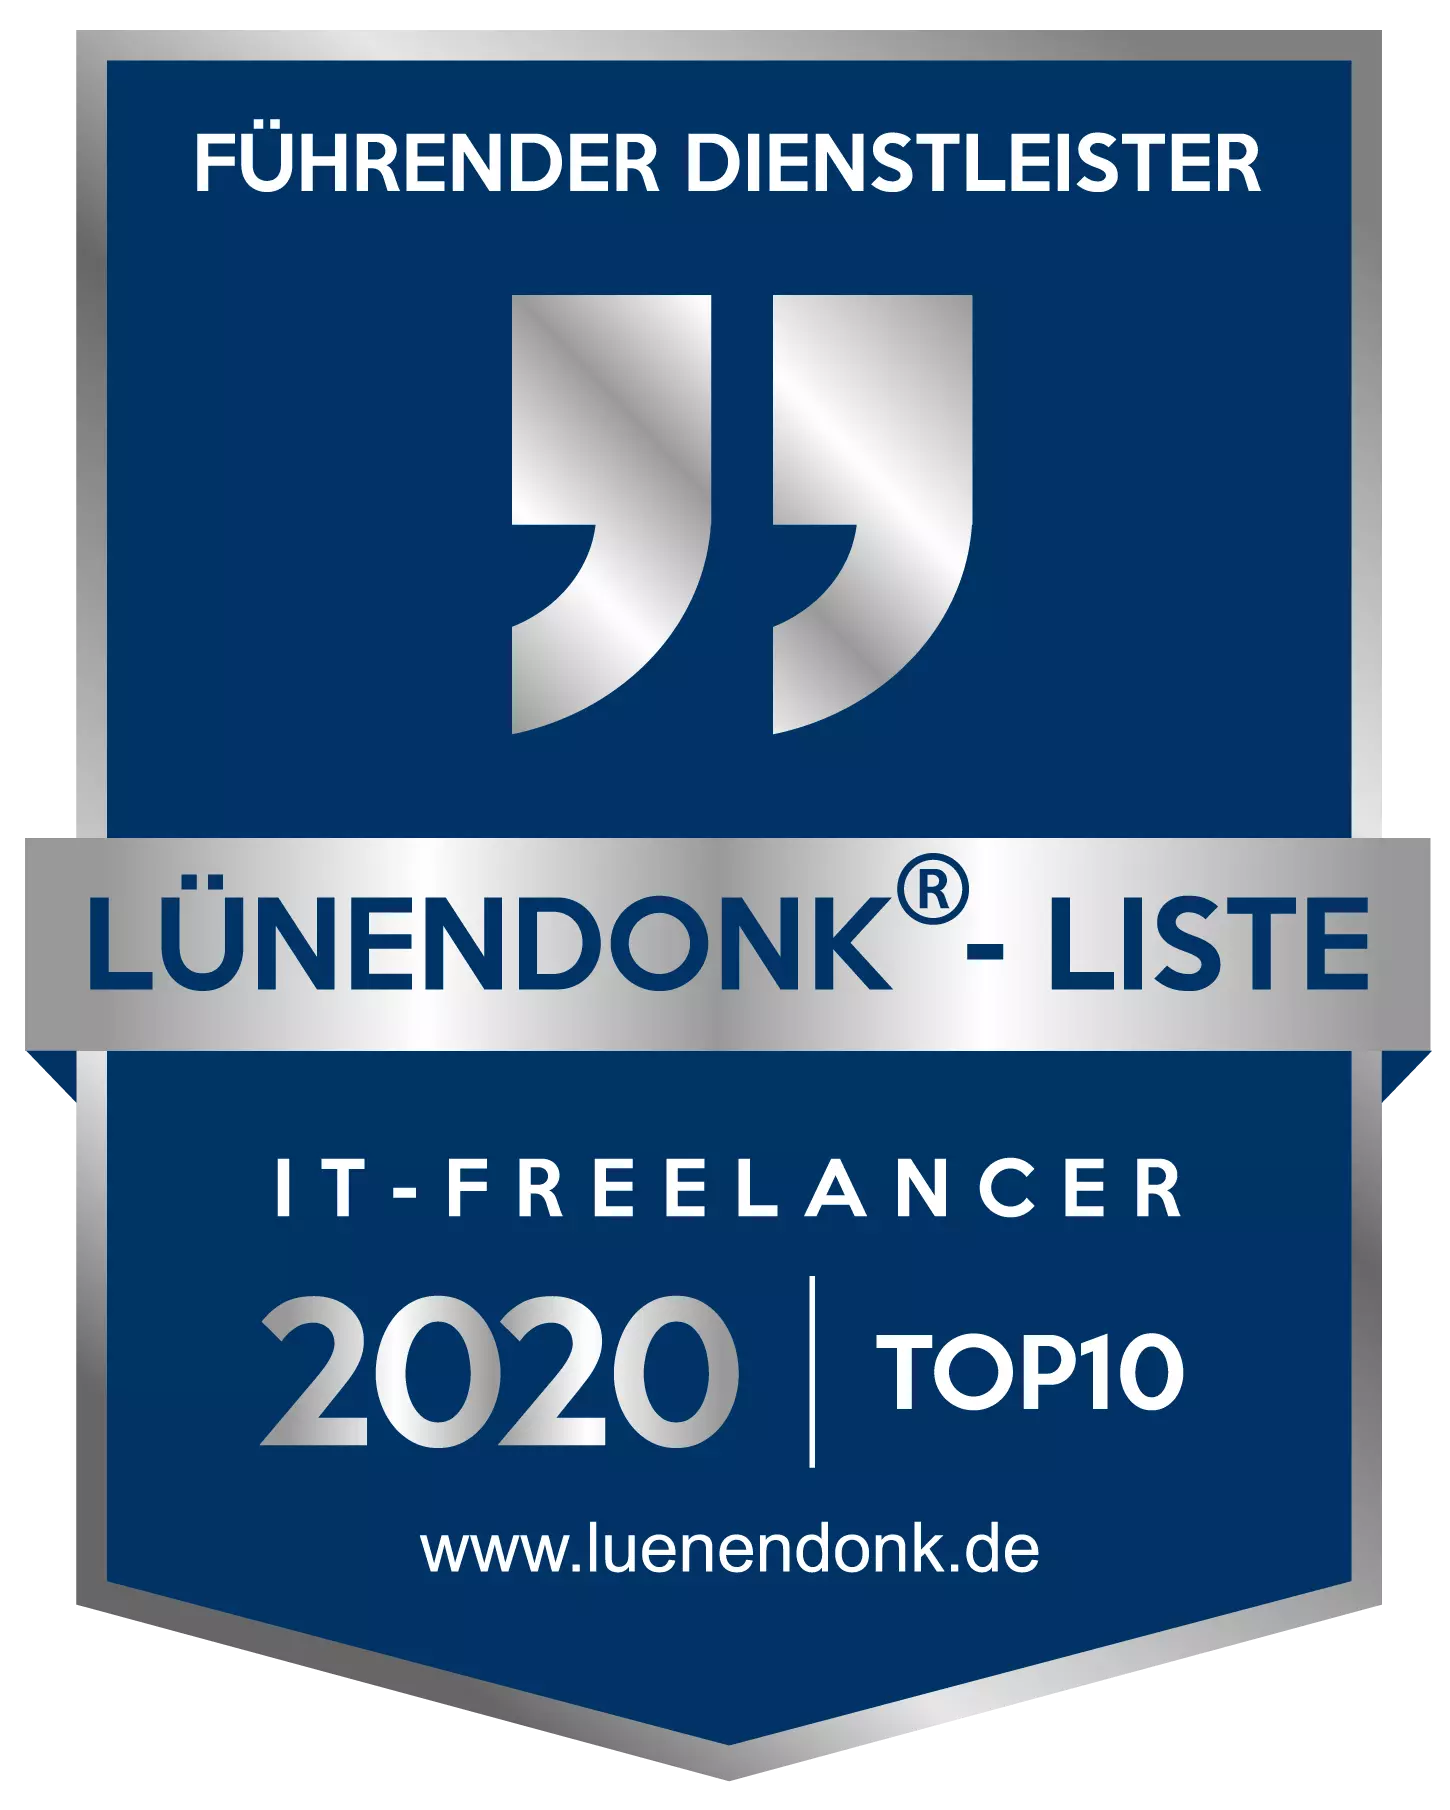 Lünendonk bestätigt:  Wir sind der einzige Top 5 Personaldienstleister in Deutschland, der sich gezielt auf Digital- & IT-Skills und das IT-nahe Umfeld fokussiert.